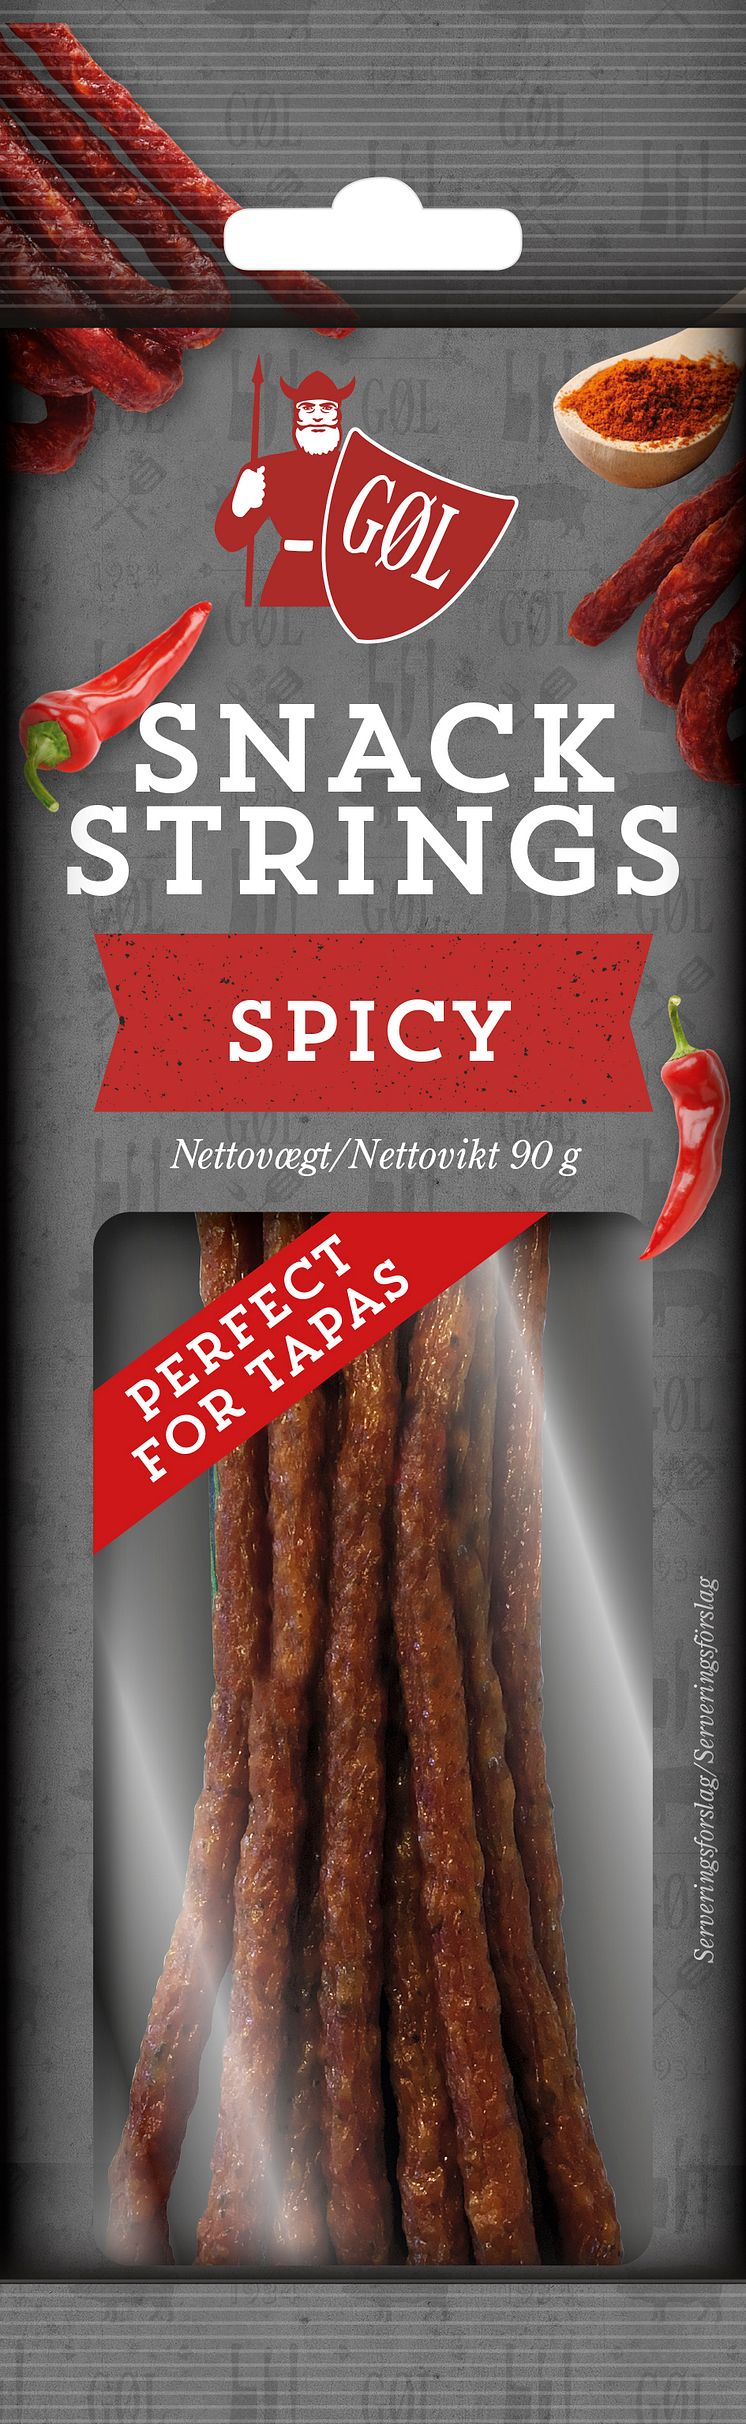 15691 Gøl Snack Strings Spicy 80x260 DK SE.jpg